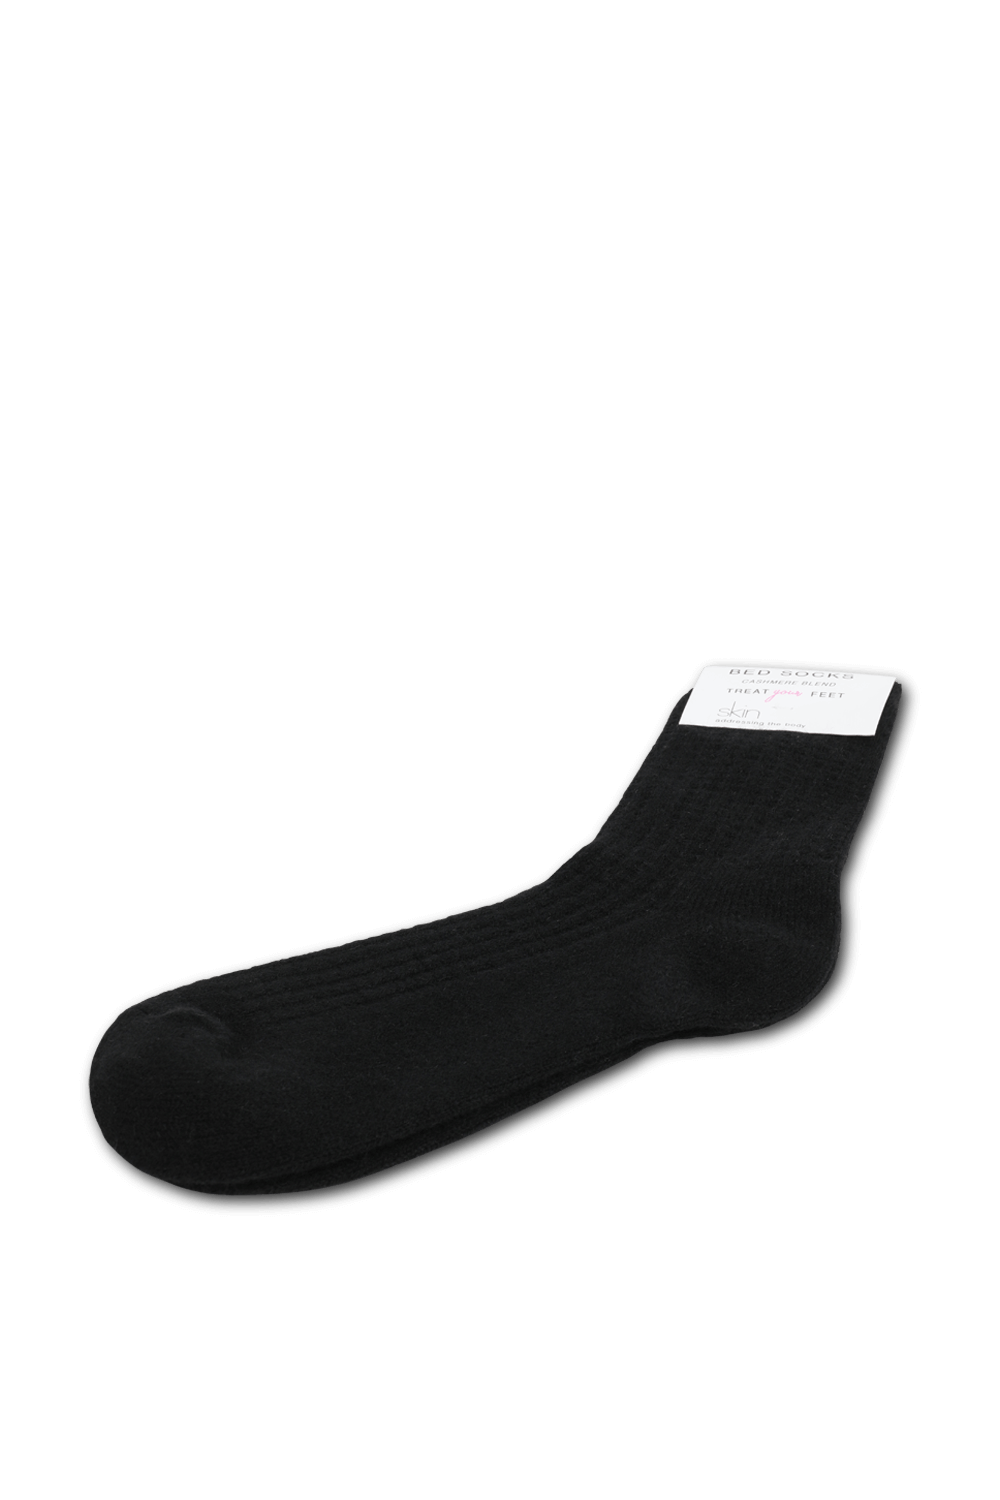 זוג גרביים עד הברך בגוון שחור SKIN